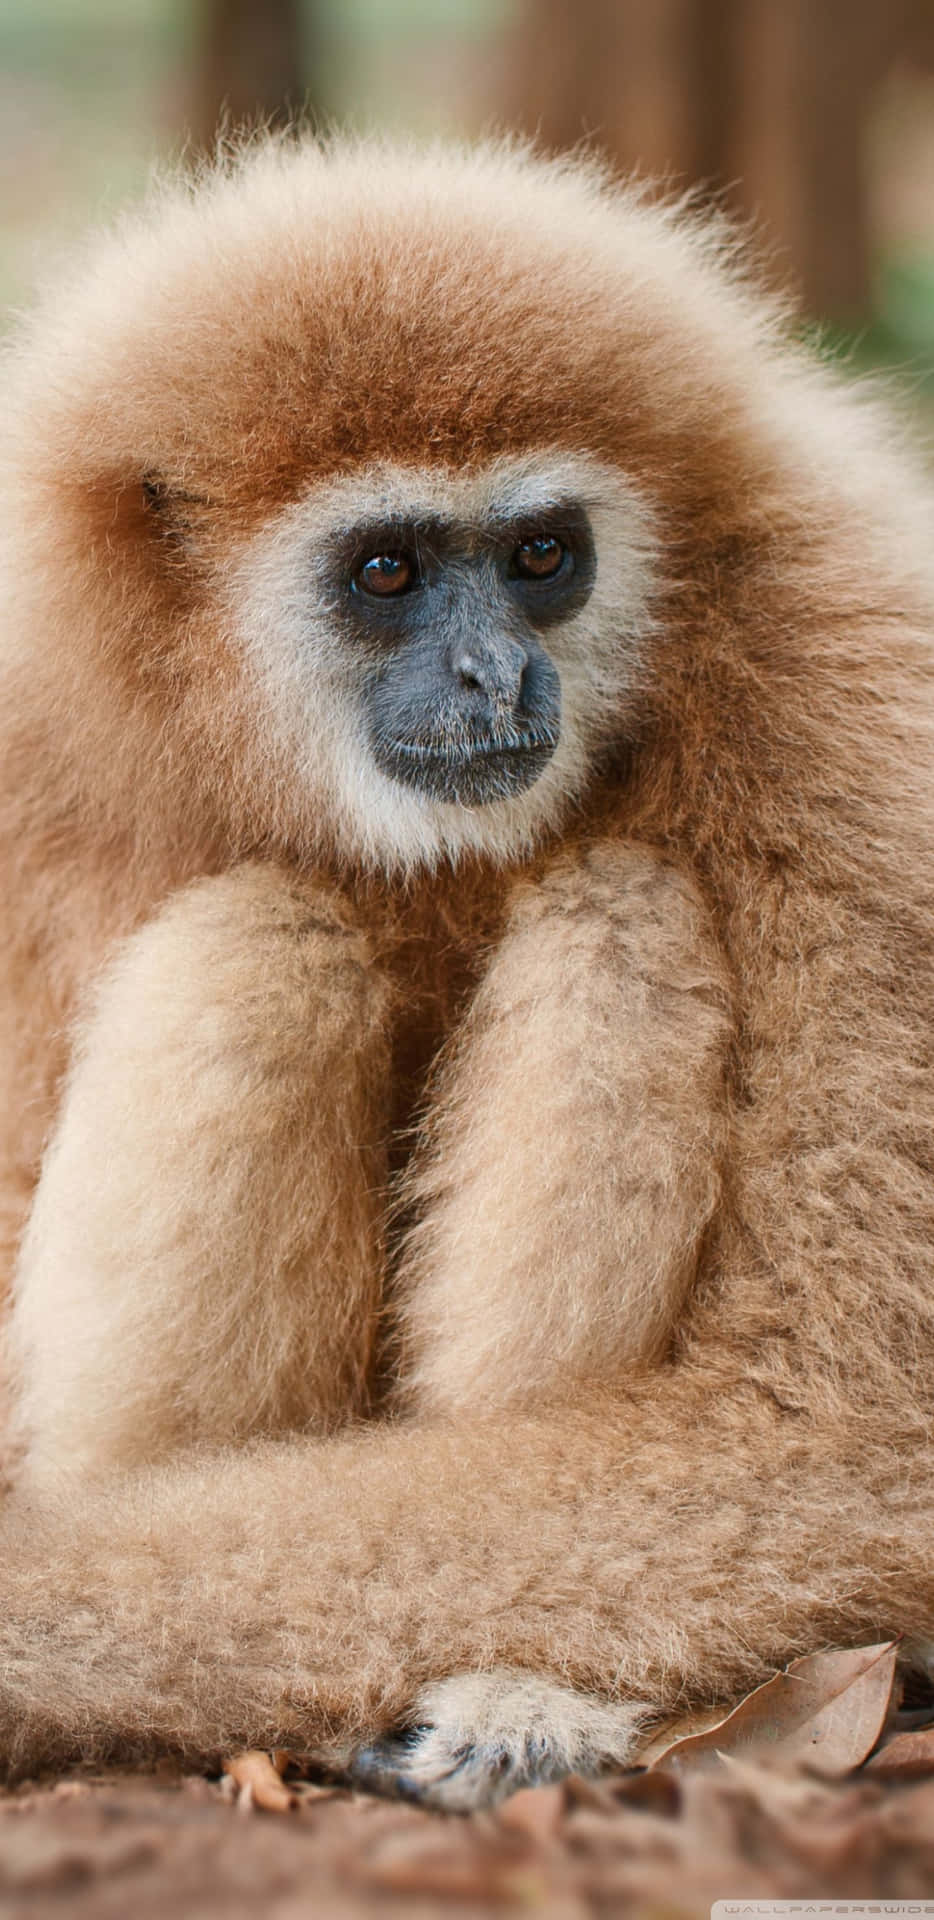 Acércatea La Naturaleza Con El Fondo De Pantalla Gibbon De Pixel 3xl.